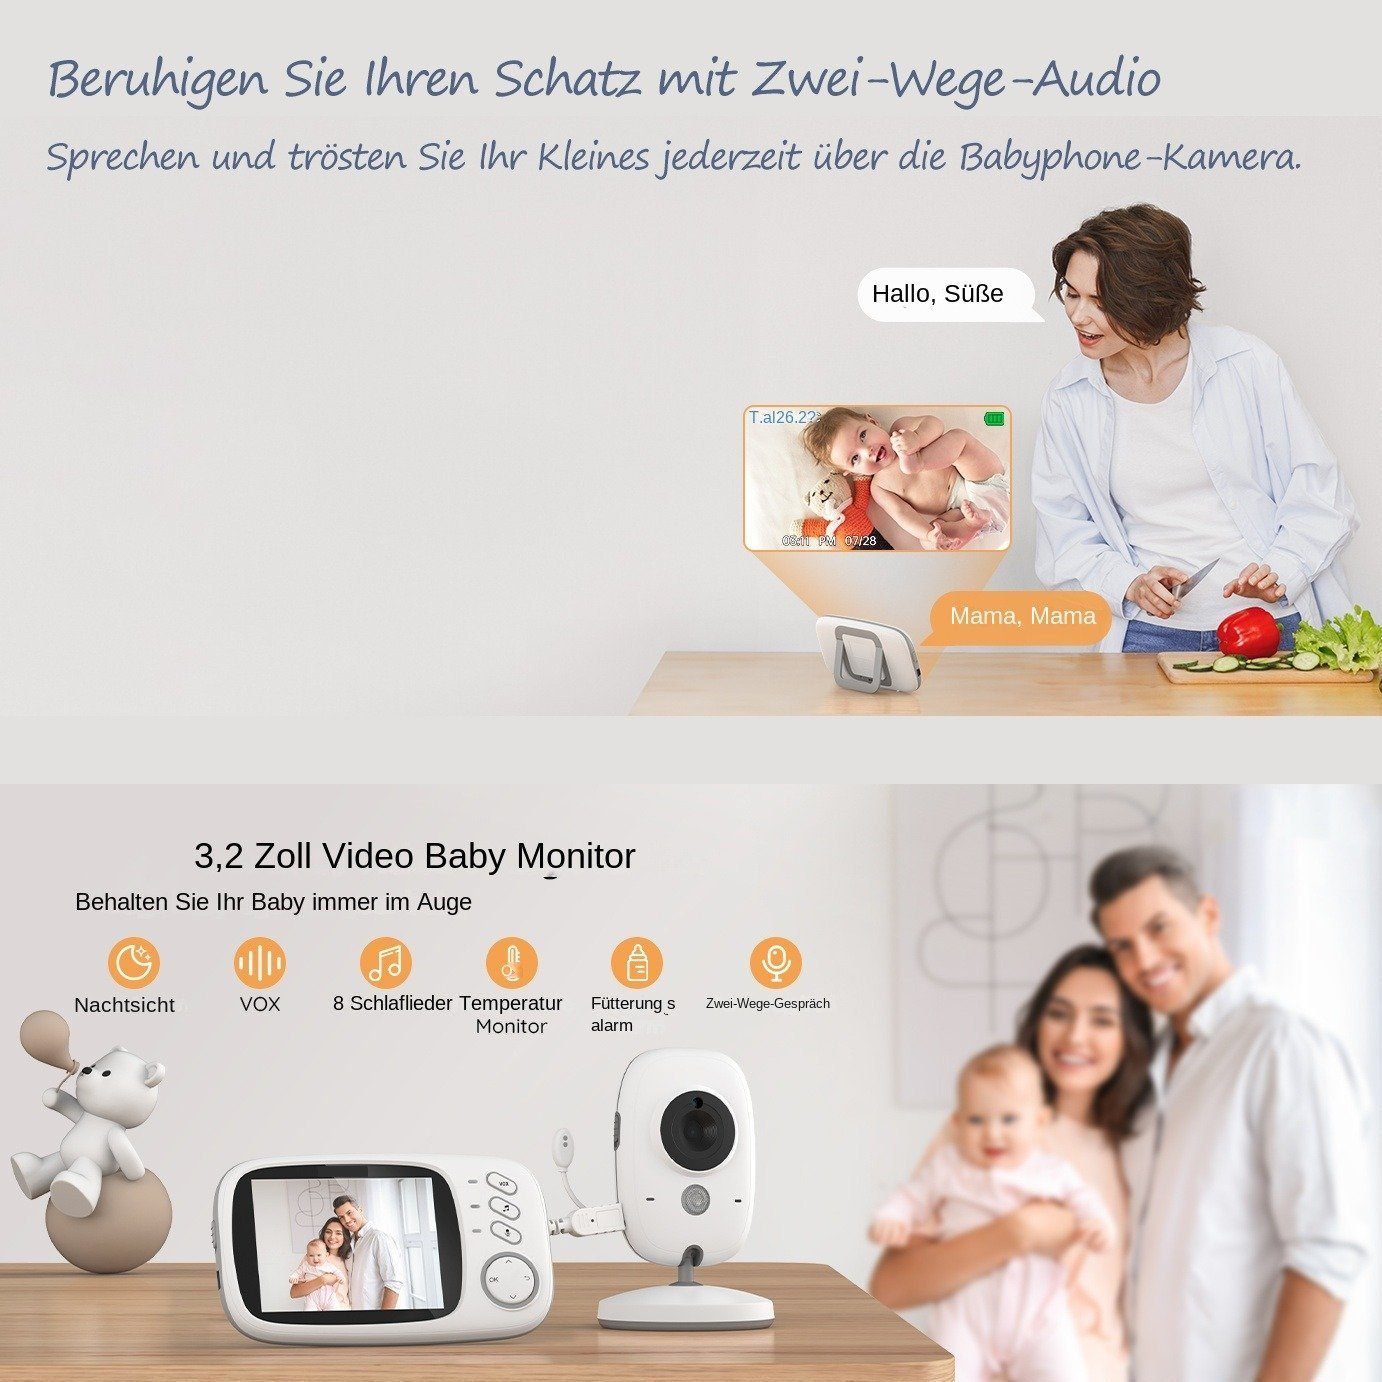 Infrarot-Nachtsicht, Temperaturanzeige, Gegensprechfunktion 3.2-Zoll-LCD-Bildschirm, Extra Großer Babyphone Kamera, mit Zwei-Wege-Audio, Video-Babyphone Schlaflieder, BUMHUM